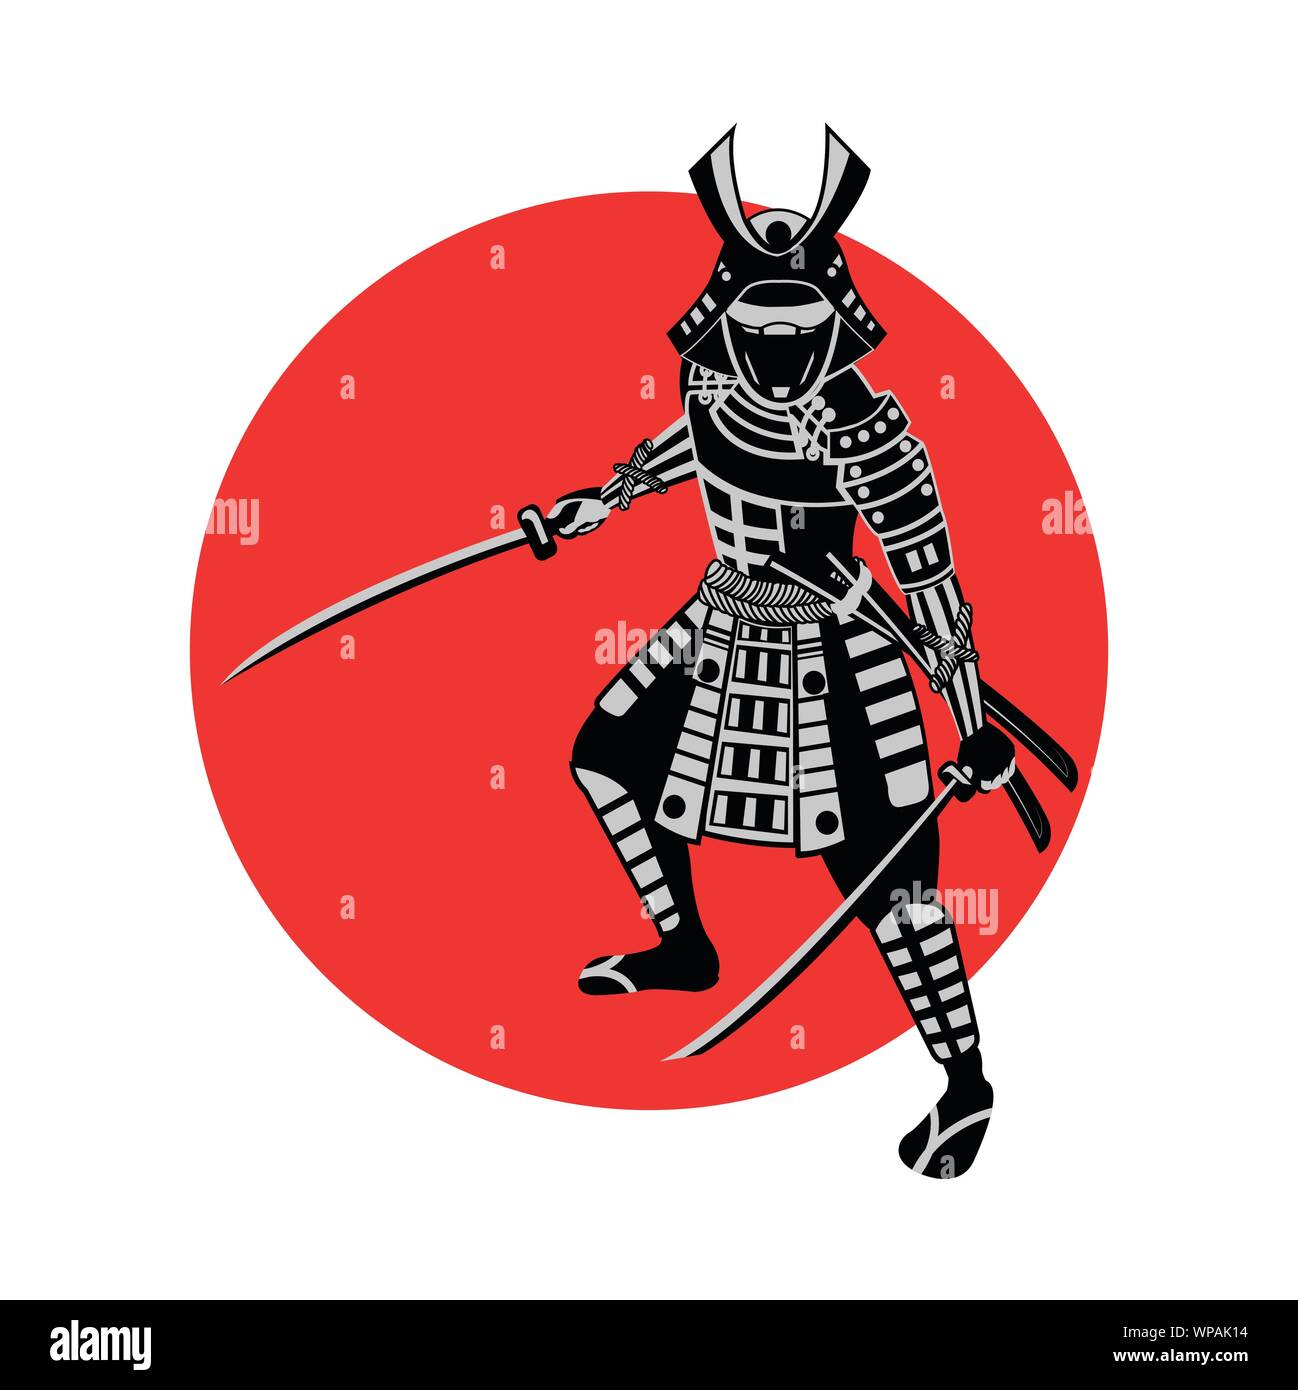 Samurai Schwert halten vor roten Kreis, Krieger von Japan, monochrome realistischen Design, Vektor, Abbildung Stock Vektor